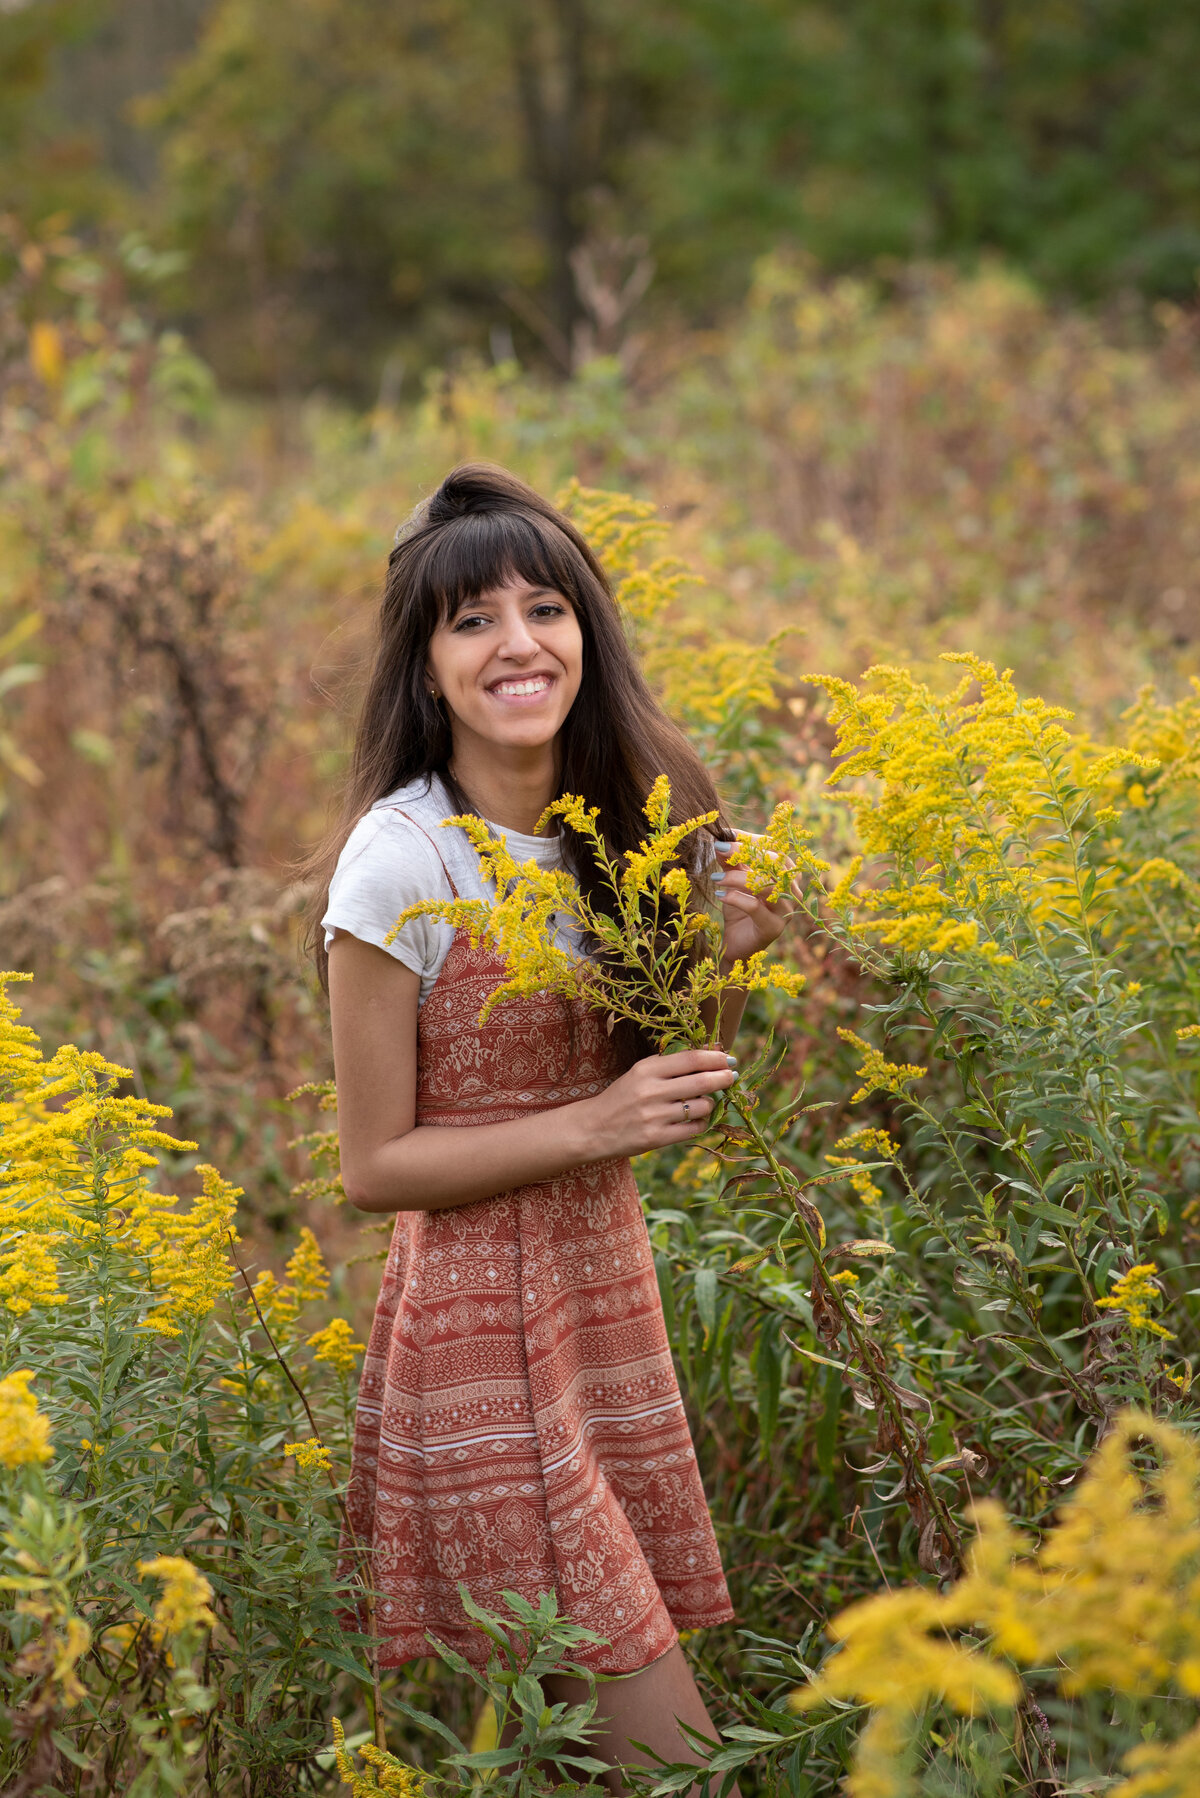 Senior girl in field of golden flowers